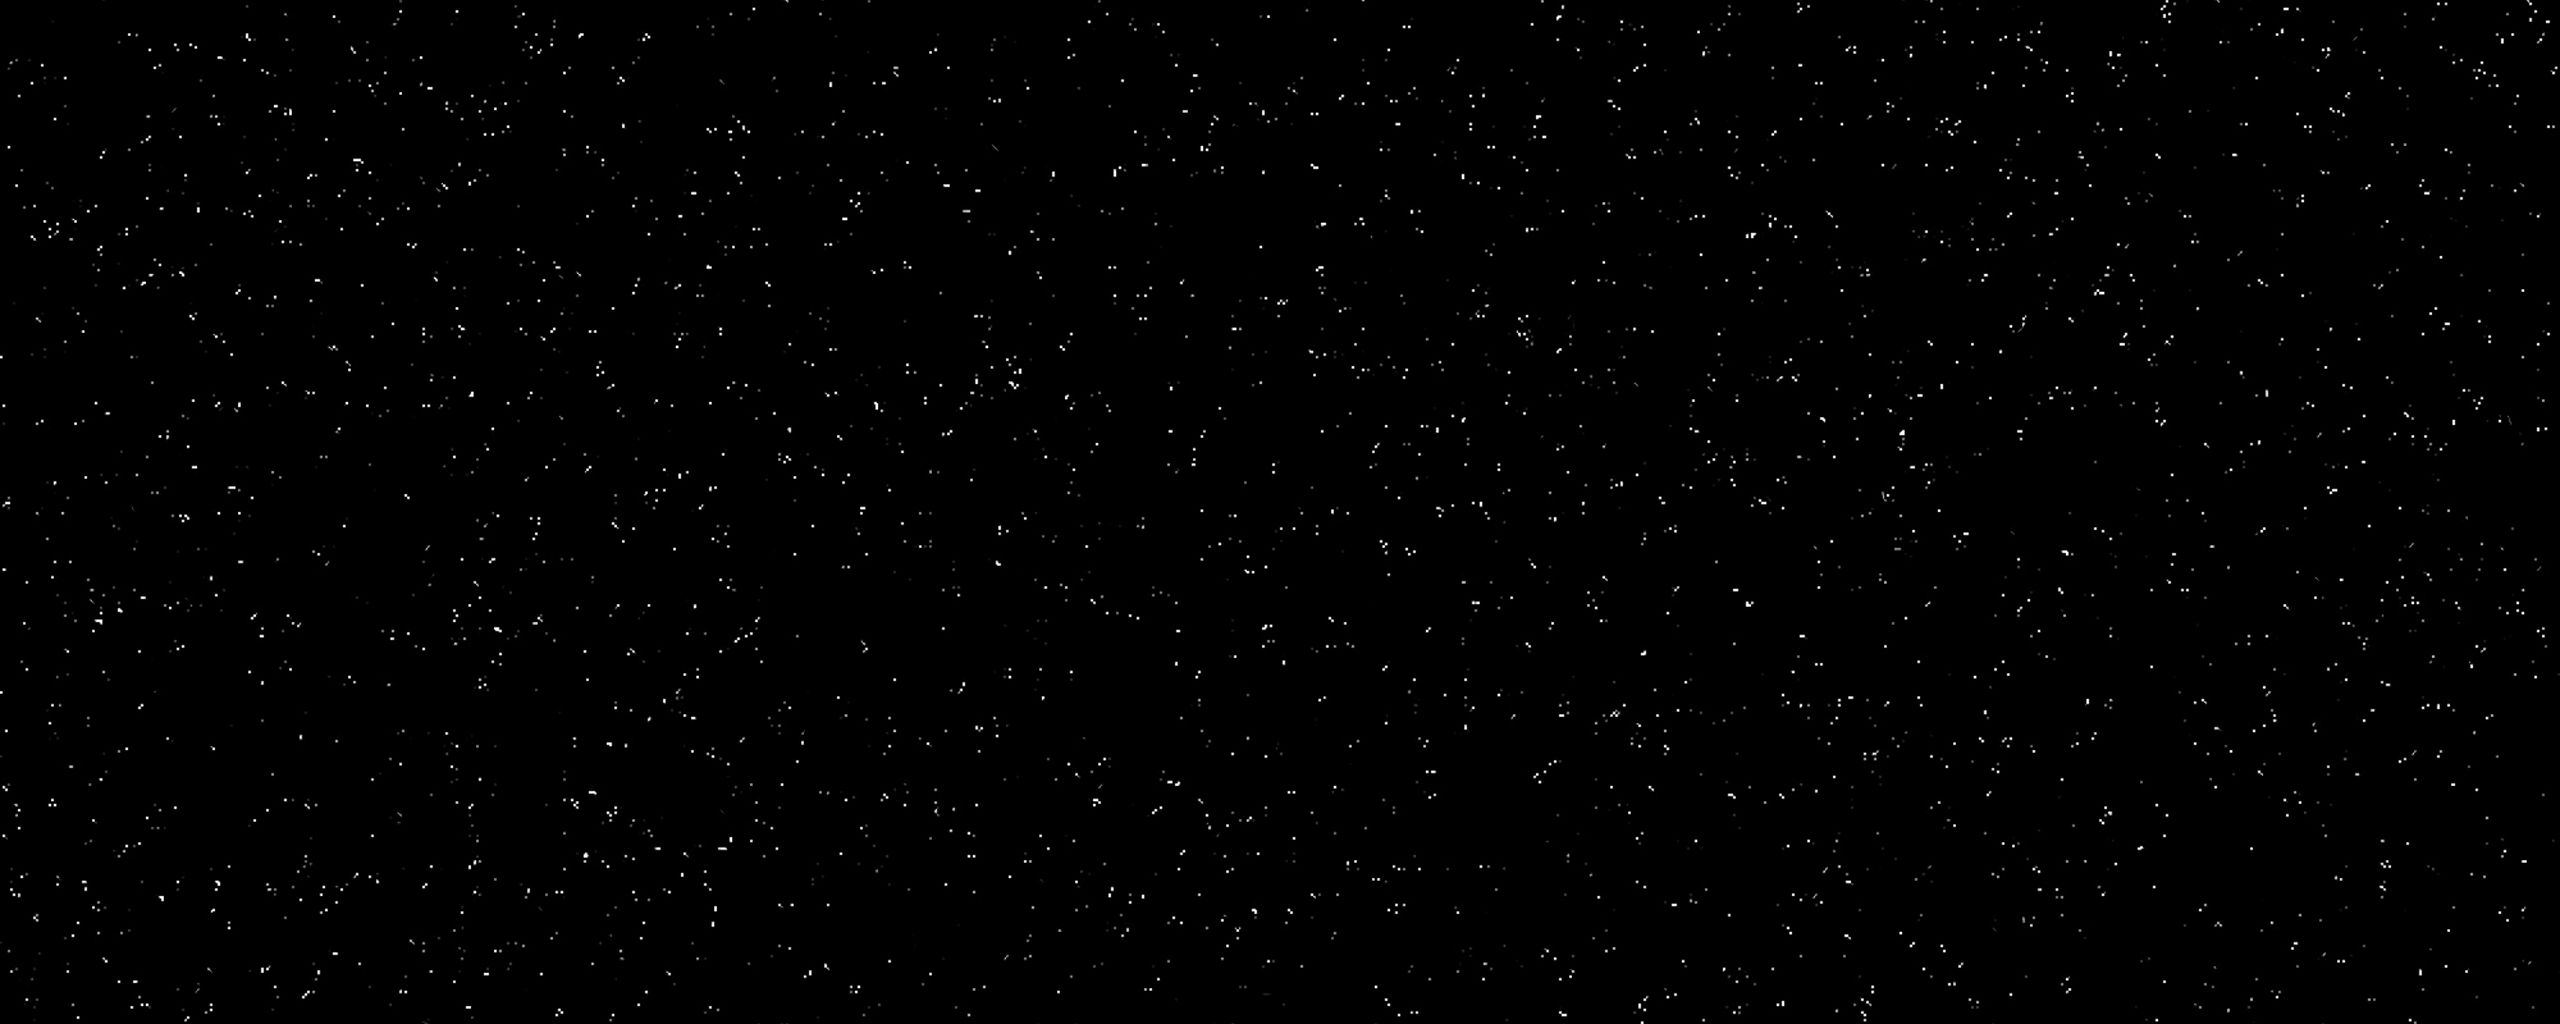 Hình nền vũ trụ với đêm tối, hàng ngàn ngôi sao và có độ phân giải đen 2560x1024 chắc chắn sẽ làm cho bạn say mê. Và nếu bạn đang tìm kiếm một hình nền hoàn hảo thì đây sẽ là sự lựa chọn hoàn hảo cho bạn, bây giờ và mãi mãi.